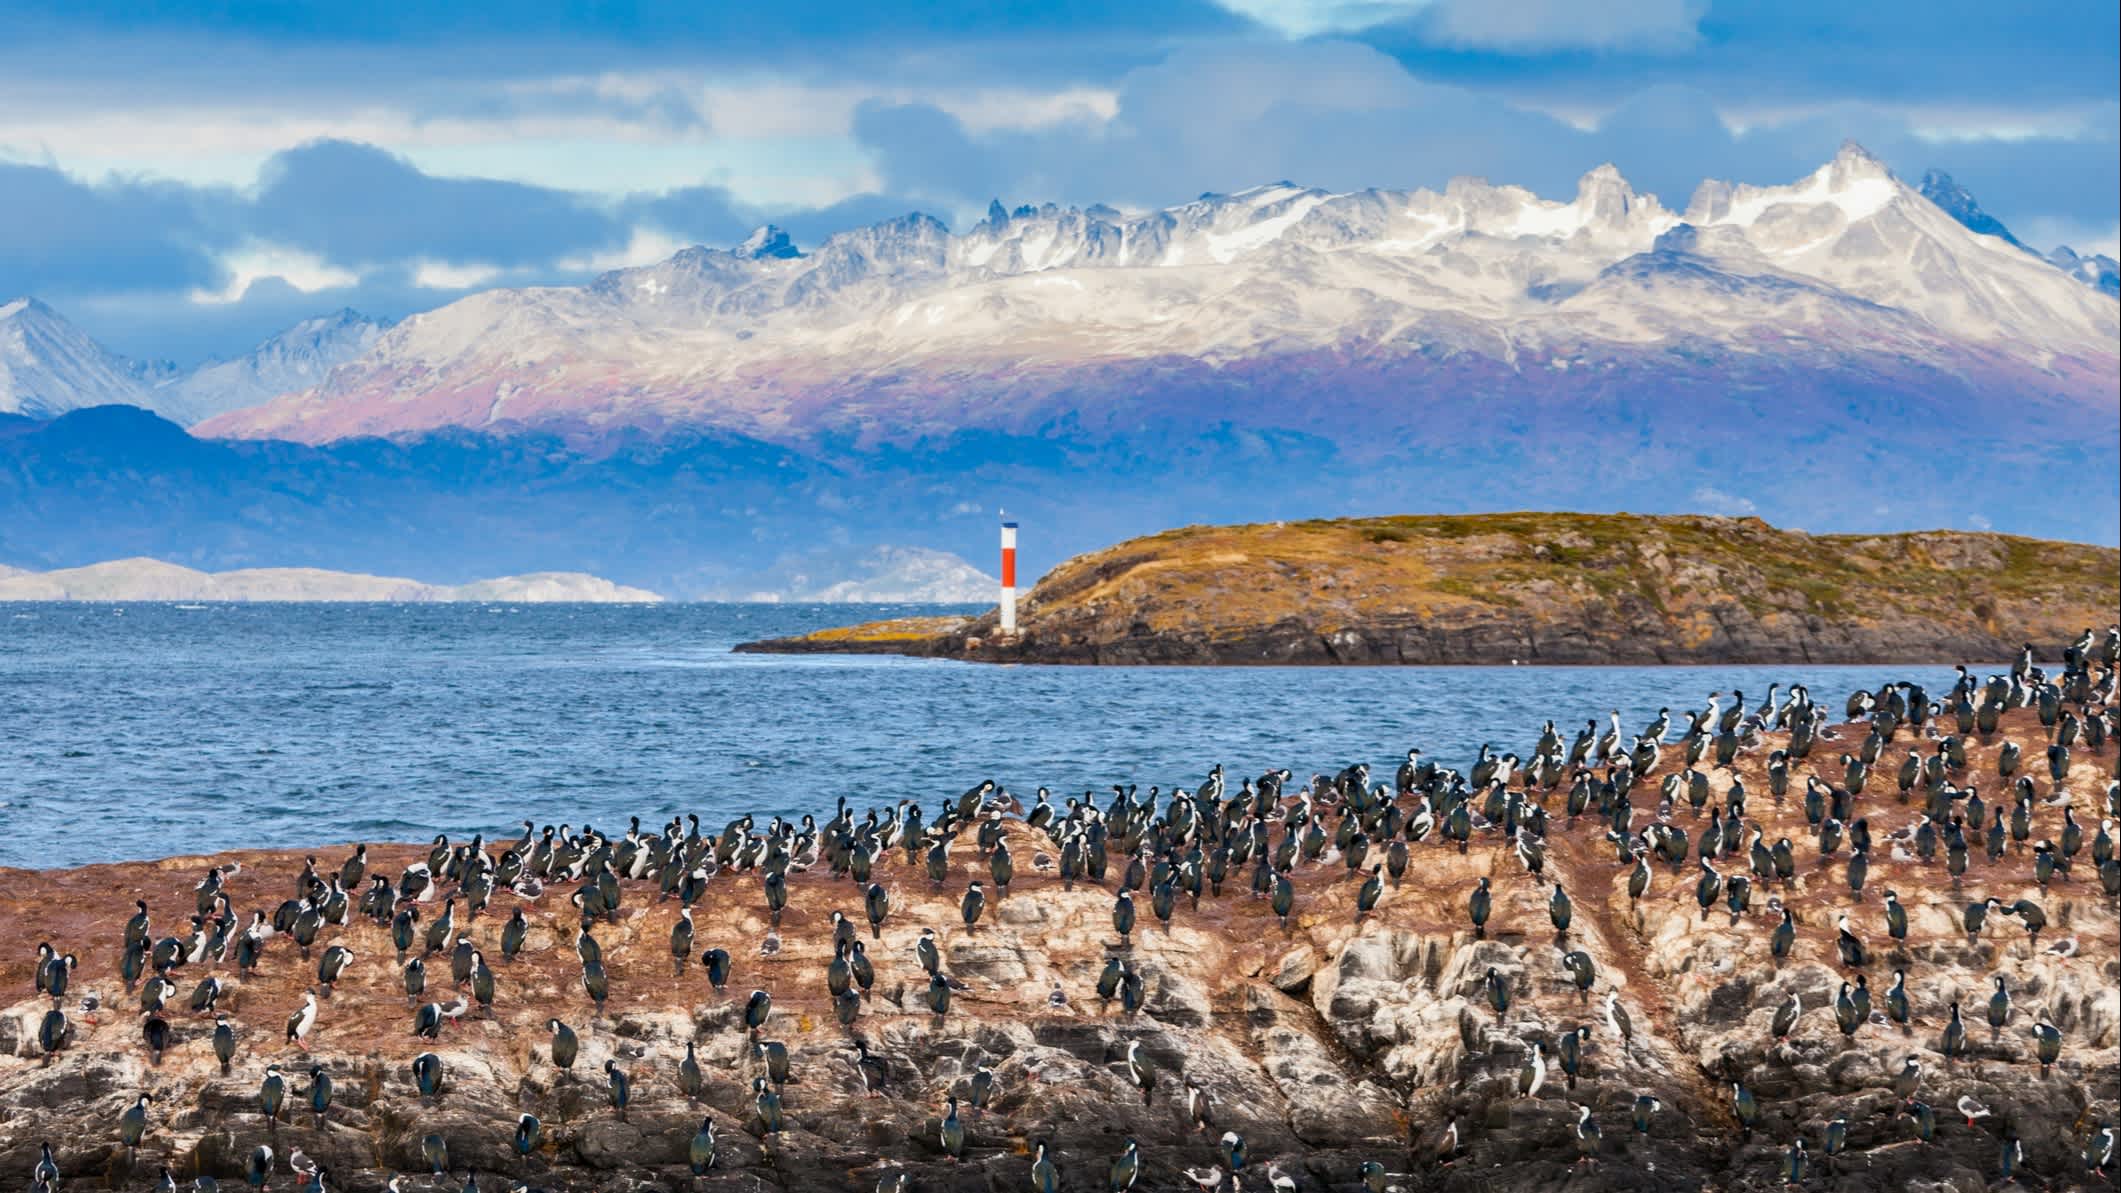 Île aux oiseaux sur le canal de Beagle, près de la ville d'Ushuaïa en Argentine.